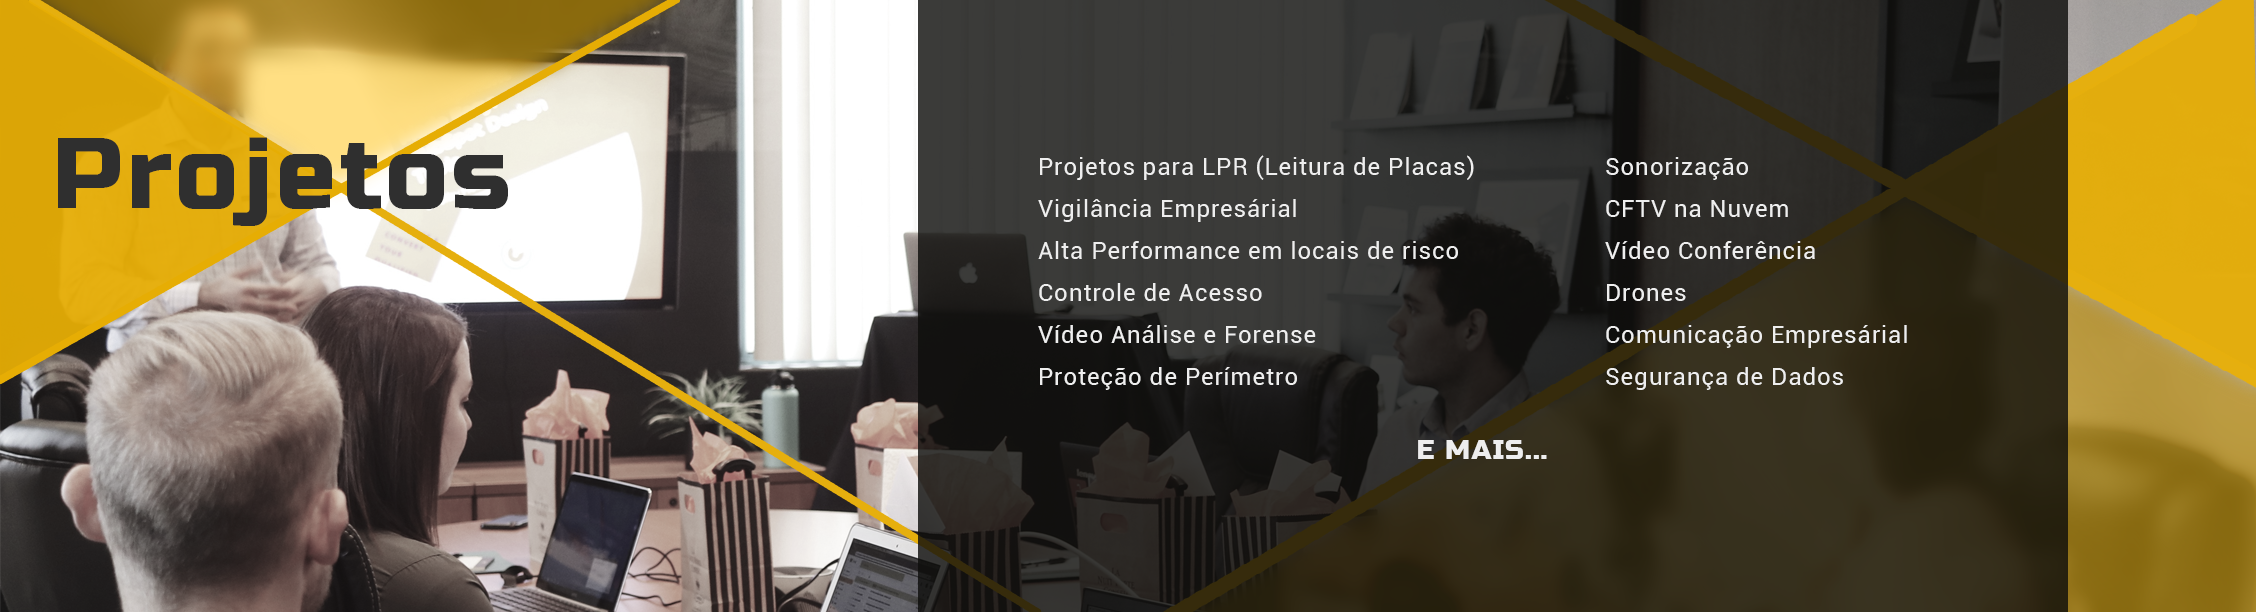 Projetos para LPR (Leitura de Placas) - Vigilância Empresárial - Alta Performance em locais de risco - Controle de Acesso - Vídeo Análise e Forense - Proteção de Perímetro